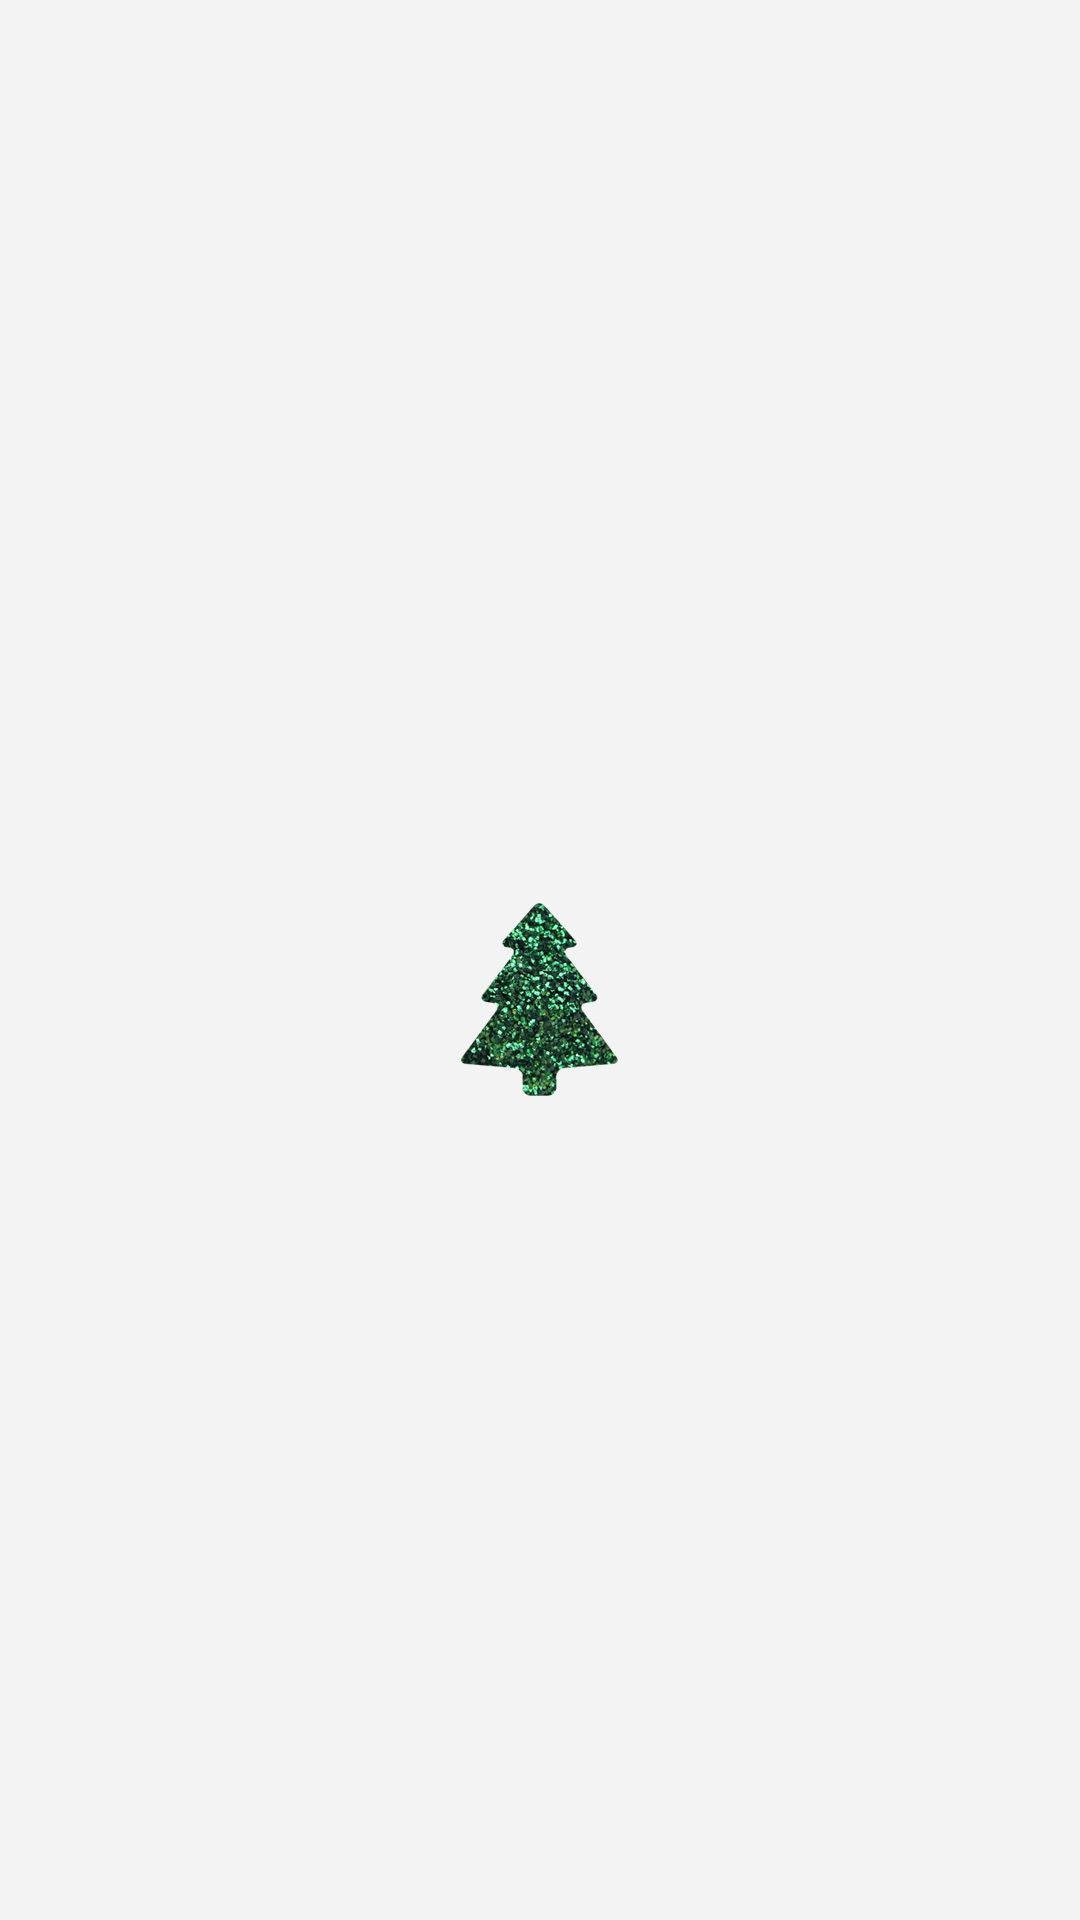 Einfacherniedlicher Weihnachts-hintergrund Für Das Iphone Mit Einem Einzigen Baum. Wallpaper